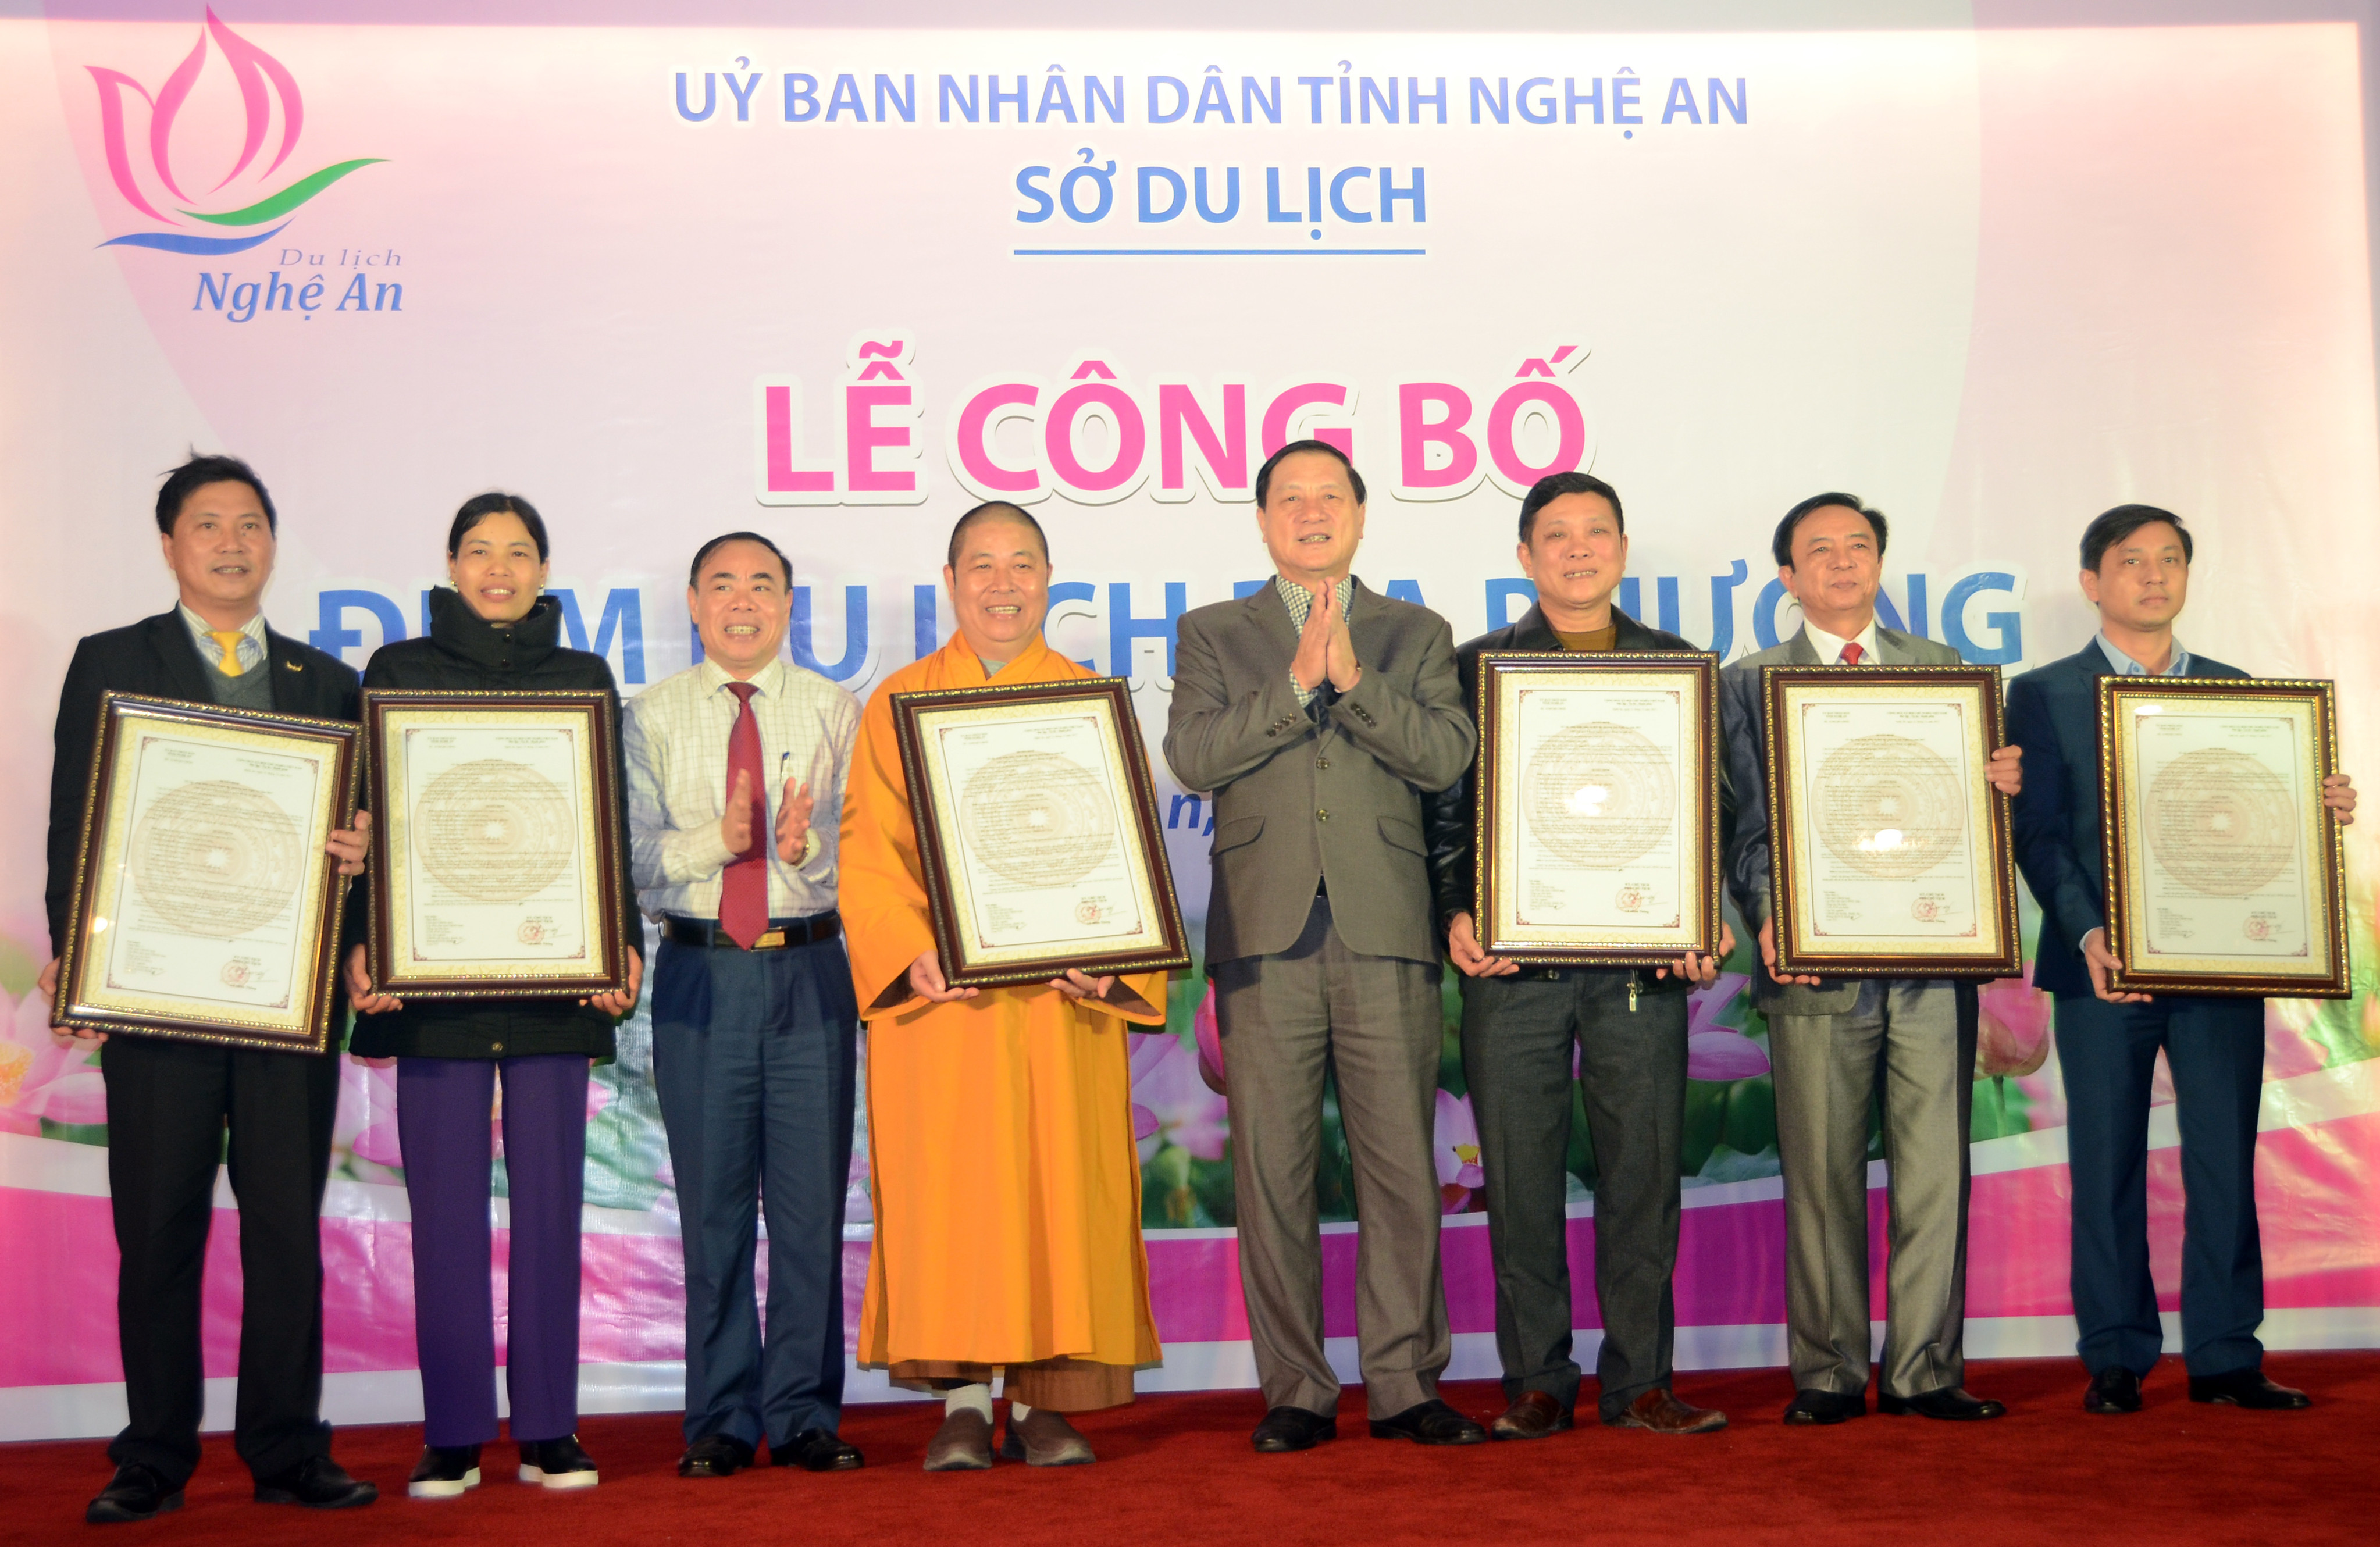 Lãnh đạo UBND tỉnh Nghệ An trao quyết định công nhận điểm du lịch địa phương tỉnh Nghệ An năm 2017. Ảnh: Thành Chung